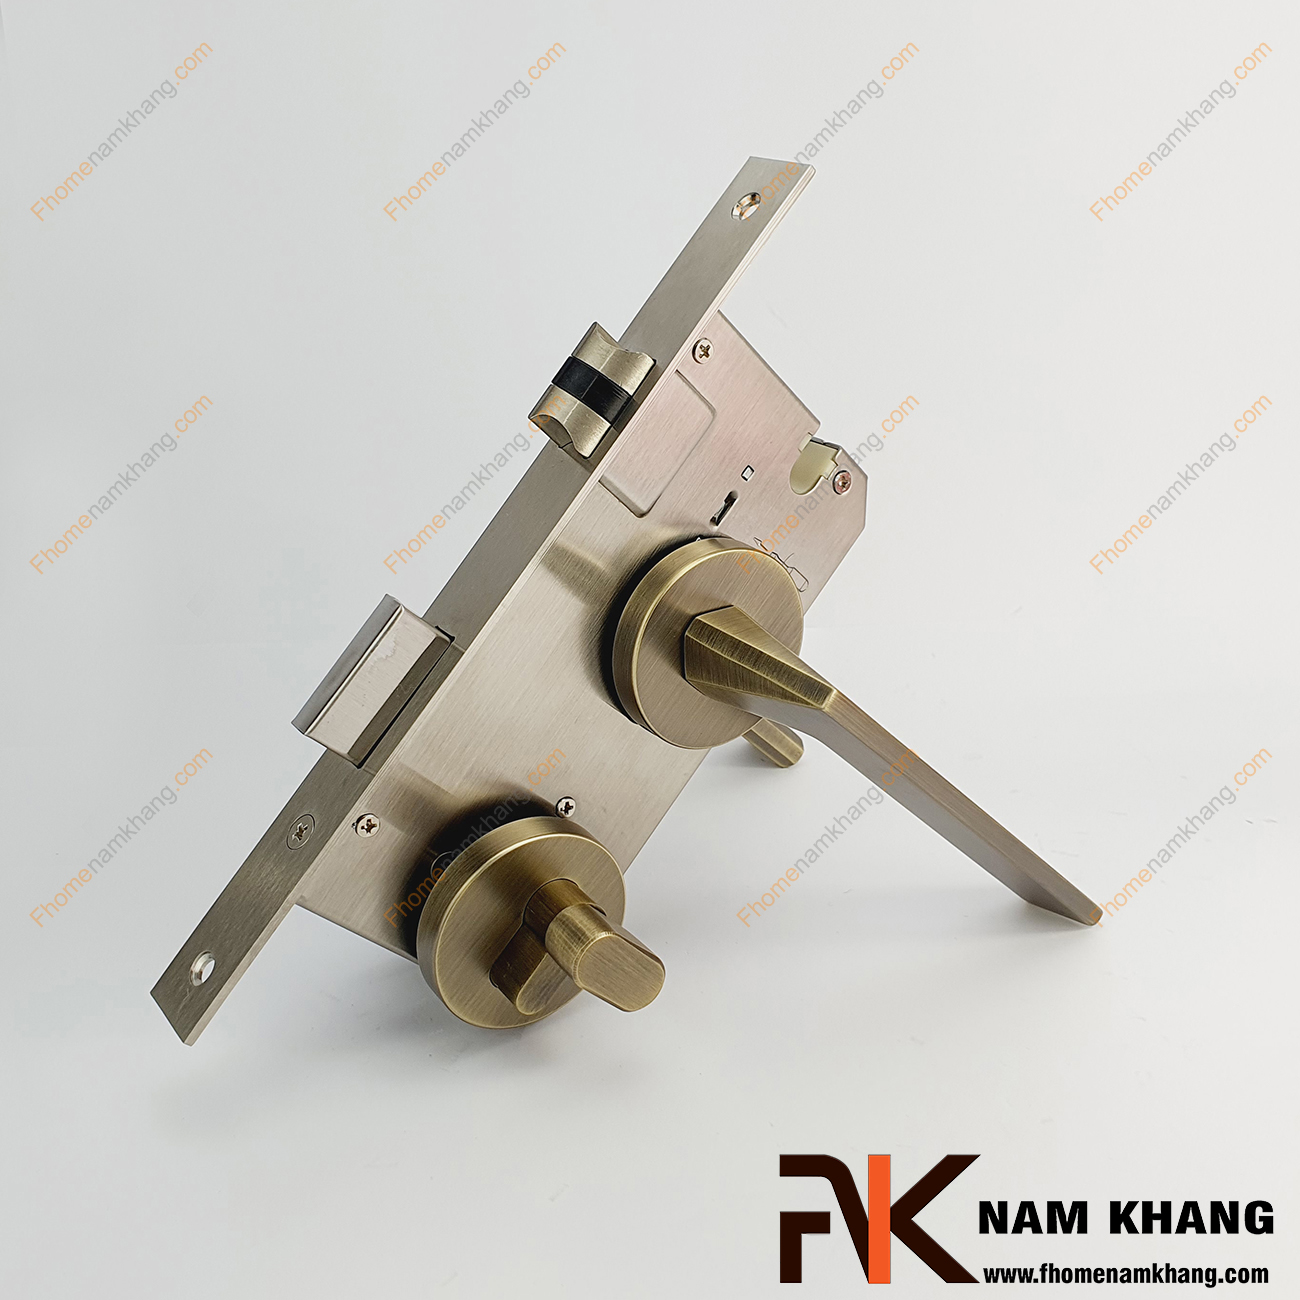 Khóa cửa phân thể dạng trơn màu đồng rêu xước NK570-RX được sản xuất từ hợp kim cao cấp. Dòng khóa này có thiết kế phần ốp khóa và tay gạt riêng biệt, khá nhỏ gọn.